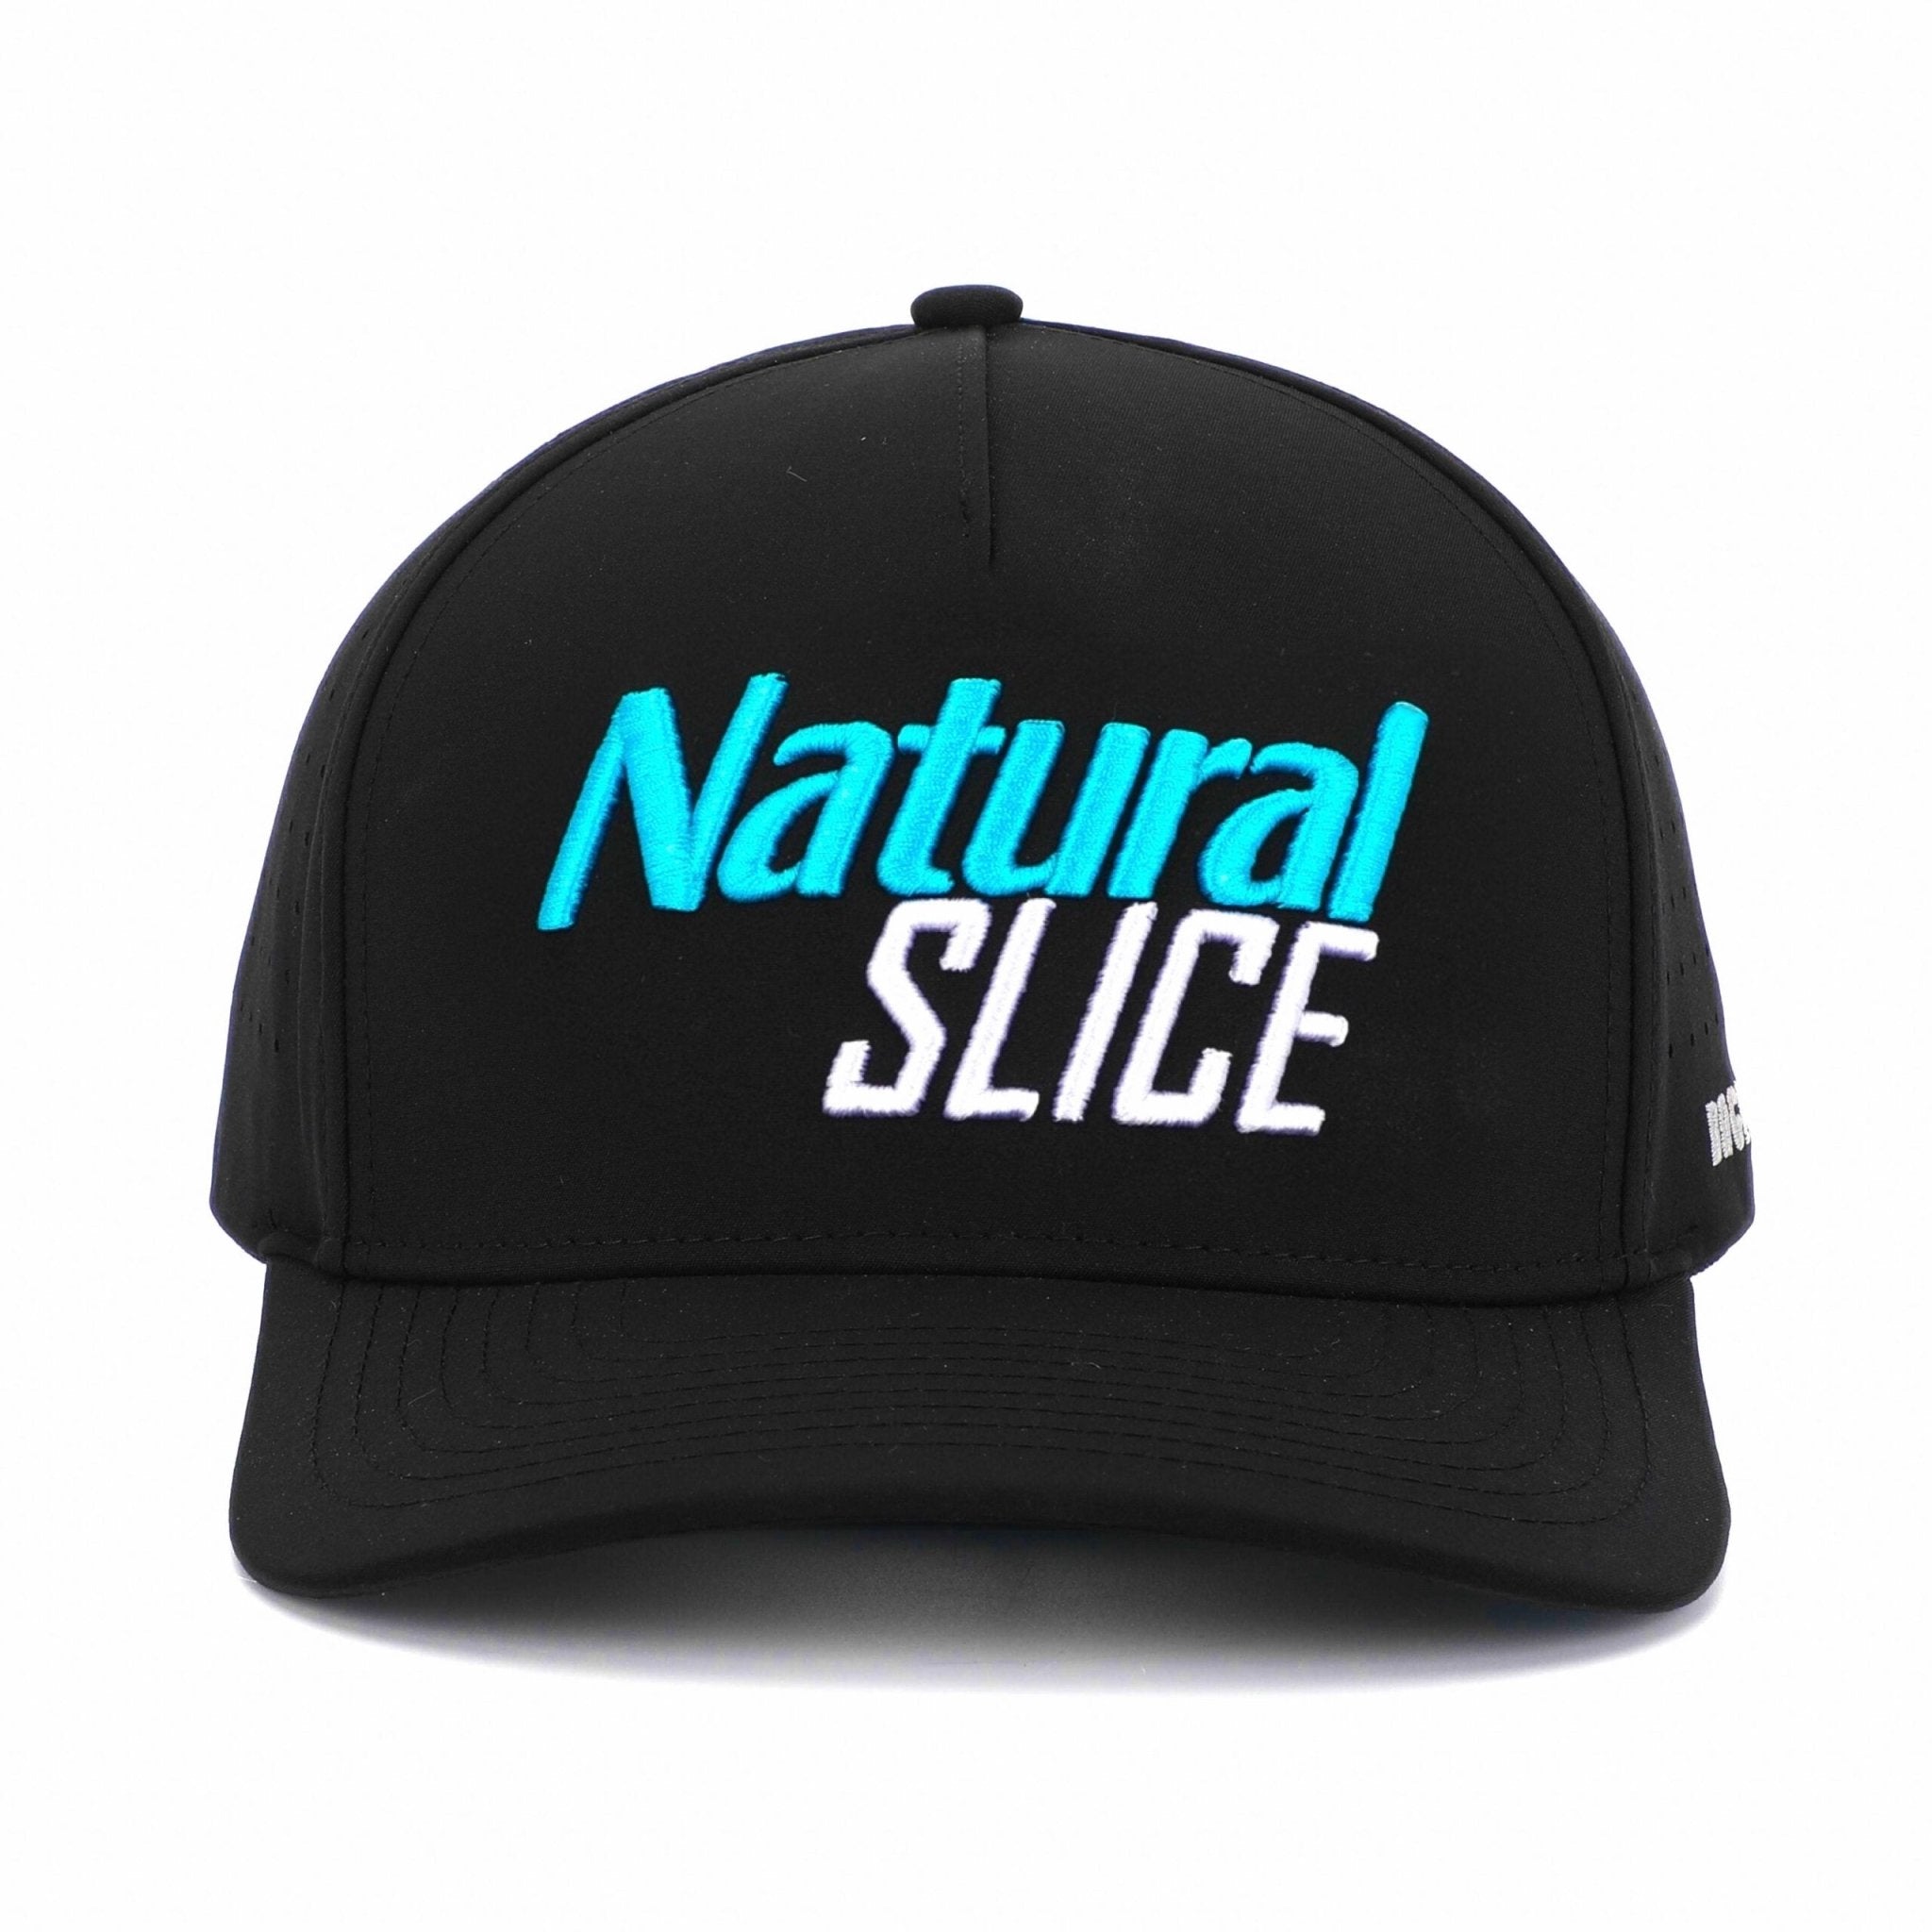 Natural Slice - Performance Golf Hat - Bogey Bros